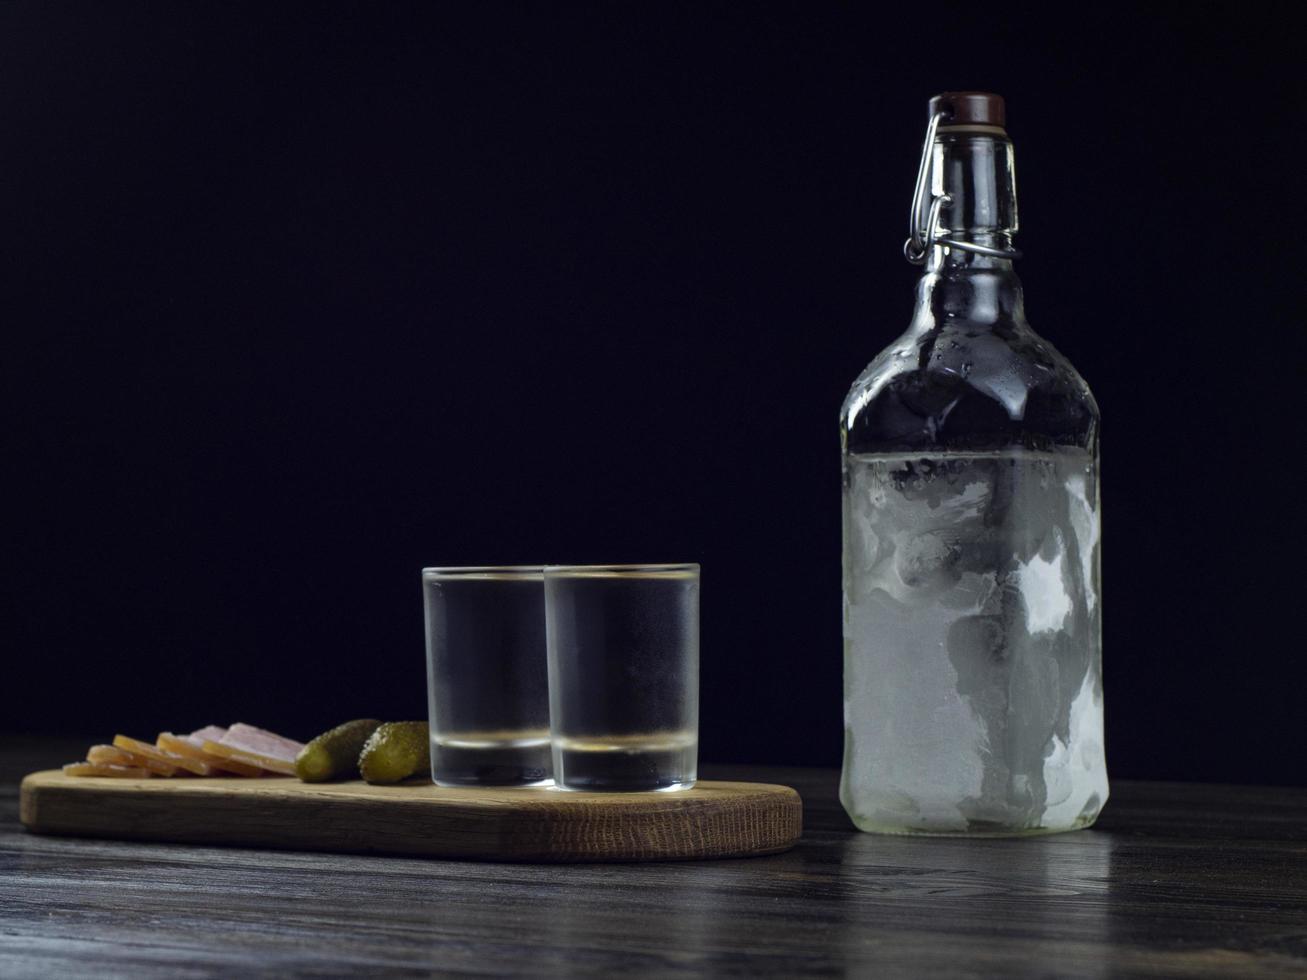 bouteille de vodka, deux verres embués avec de la vodka froide sur une planche en bois photo